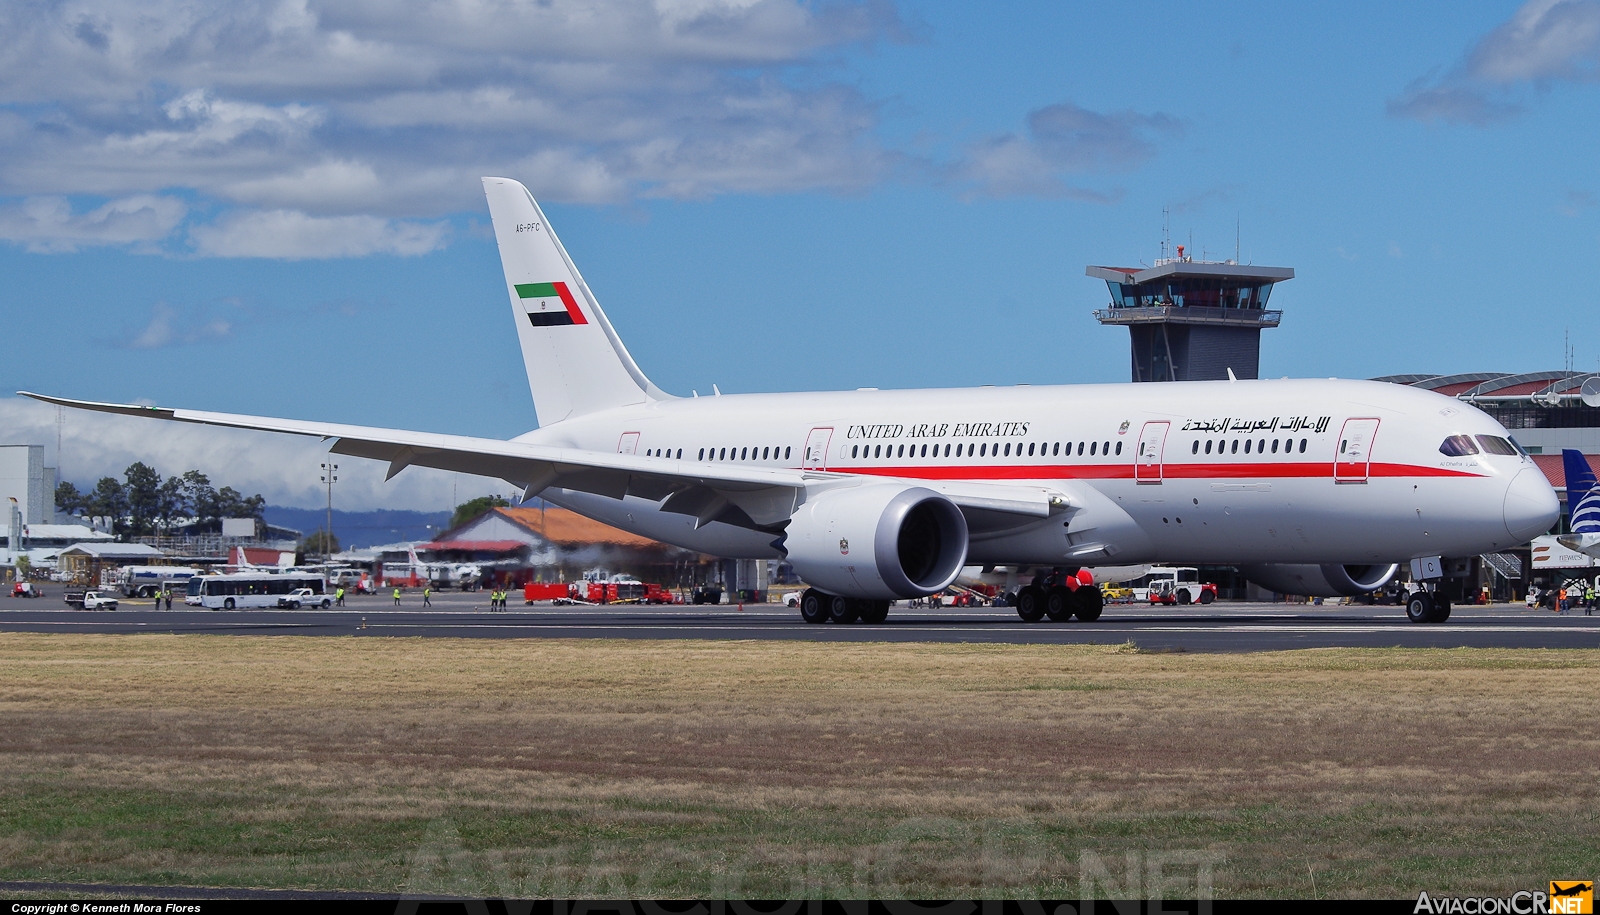 A6-PFC - Boeing 787-8 - United Arab Emirates - Abu Dhabi Amiri Flight